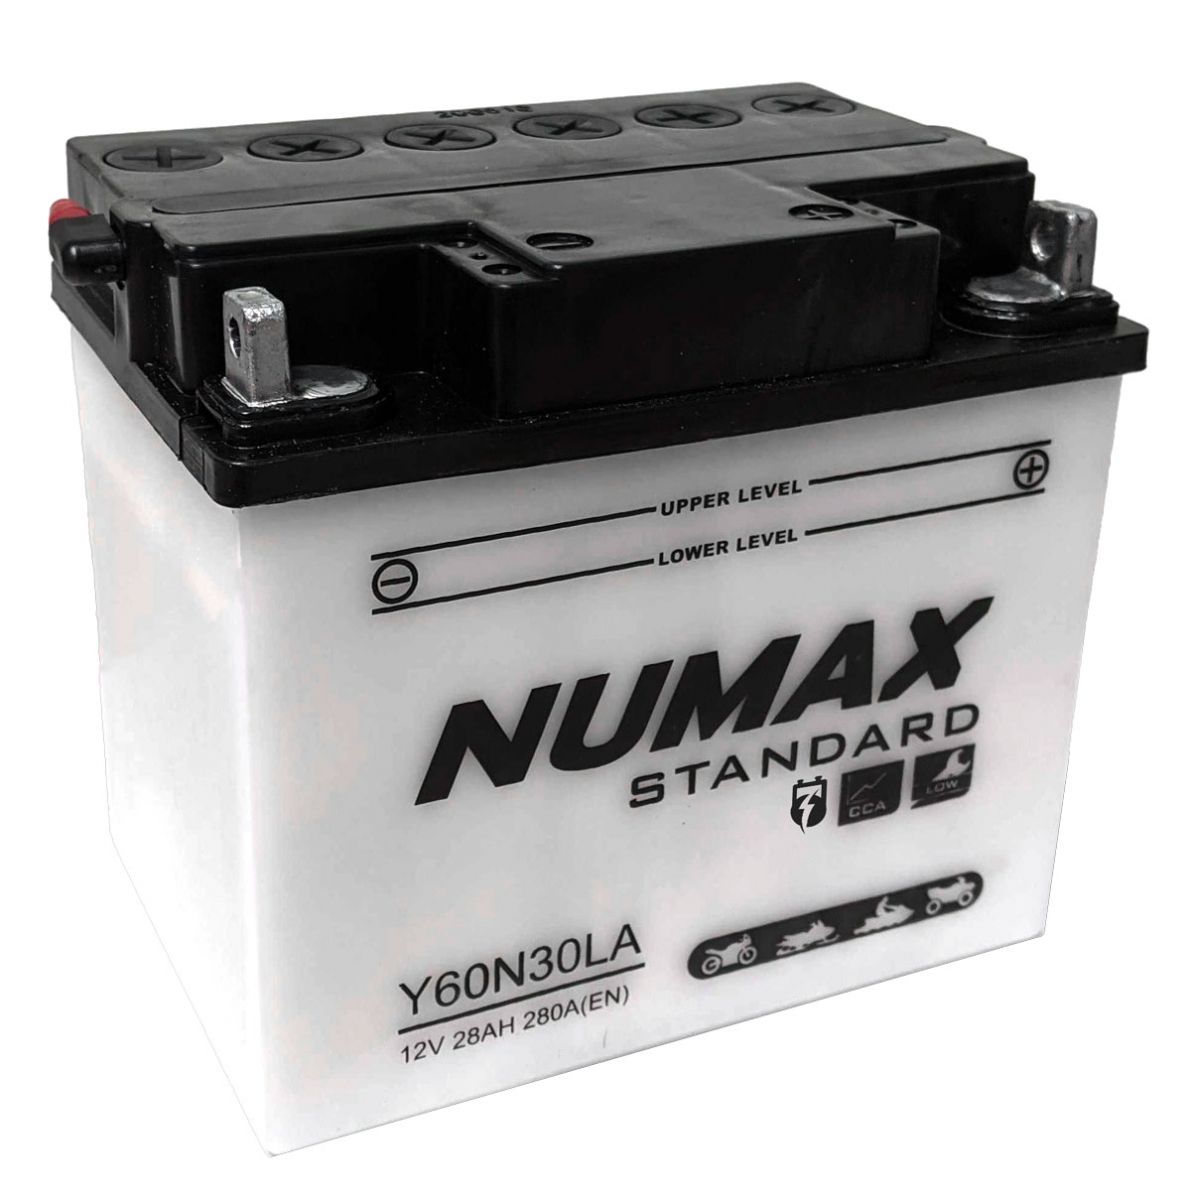 Y60-N30L-A Numax Motorbike Battery - Motorcycle Batteries